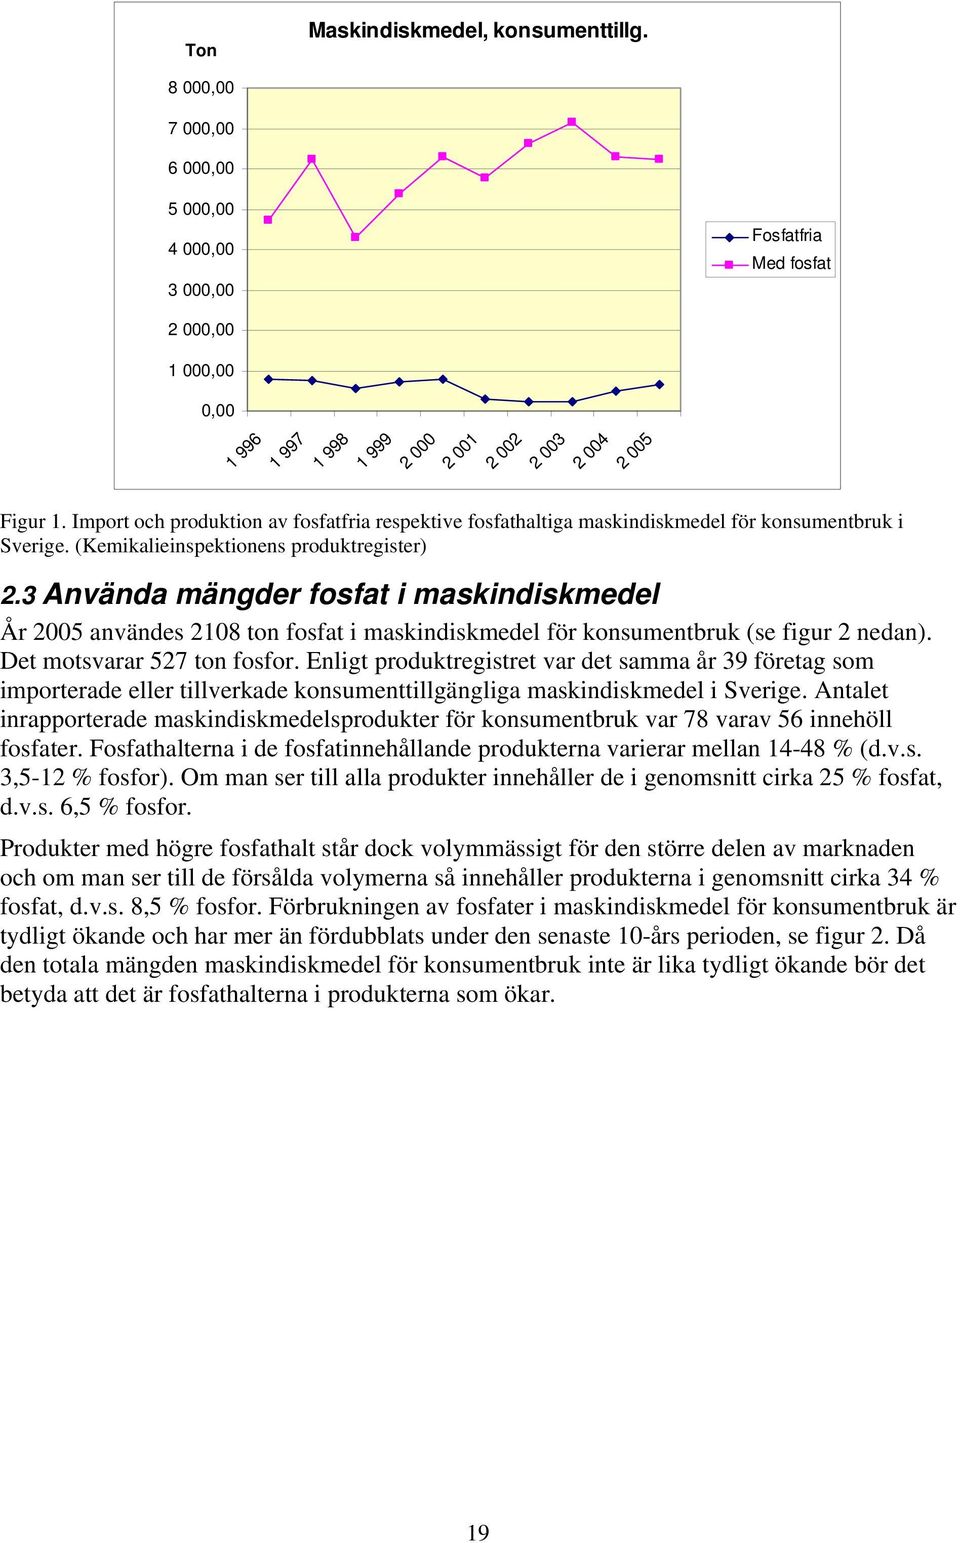 Import och produktion av fosfatfria respektive fosfathaltiga maskindiskmedel för konsumentbruk i Sverige. (Kemikalieinspektionens produktregister) 2.